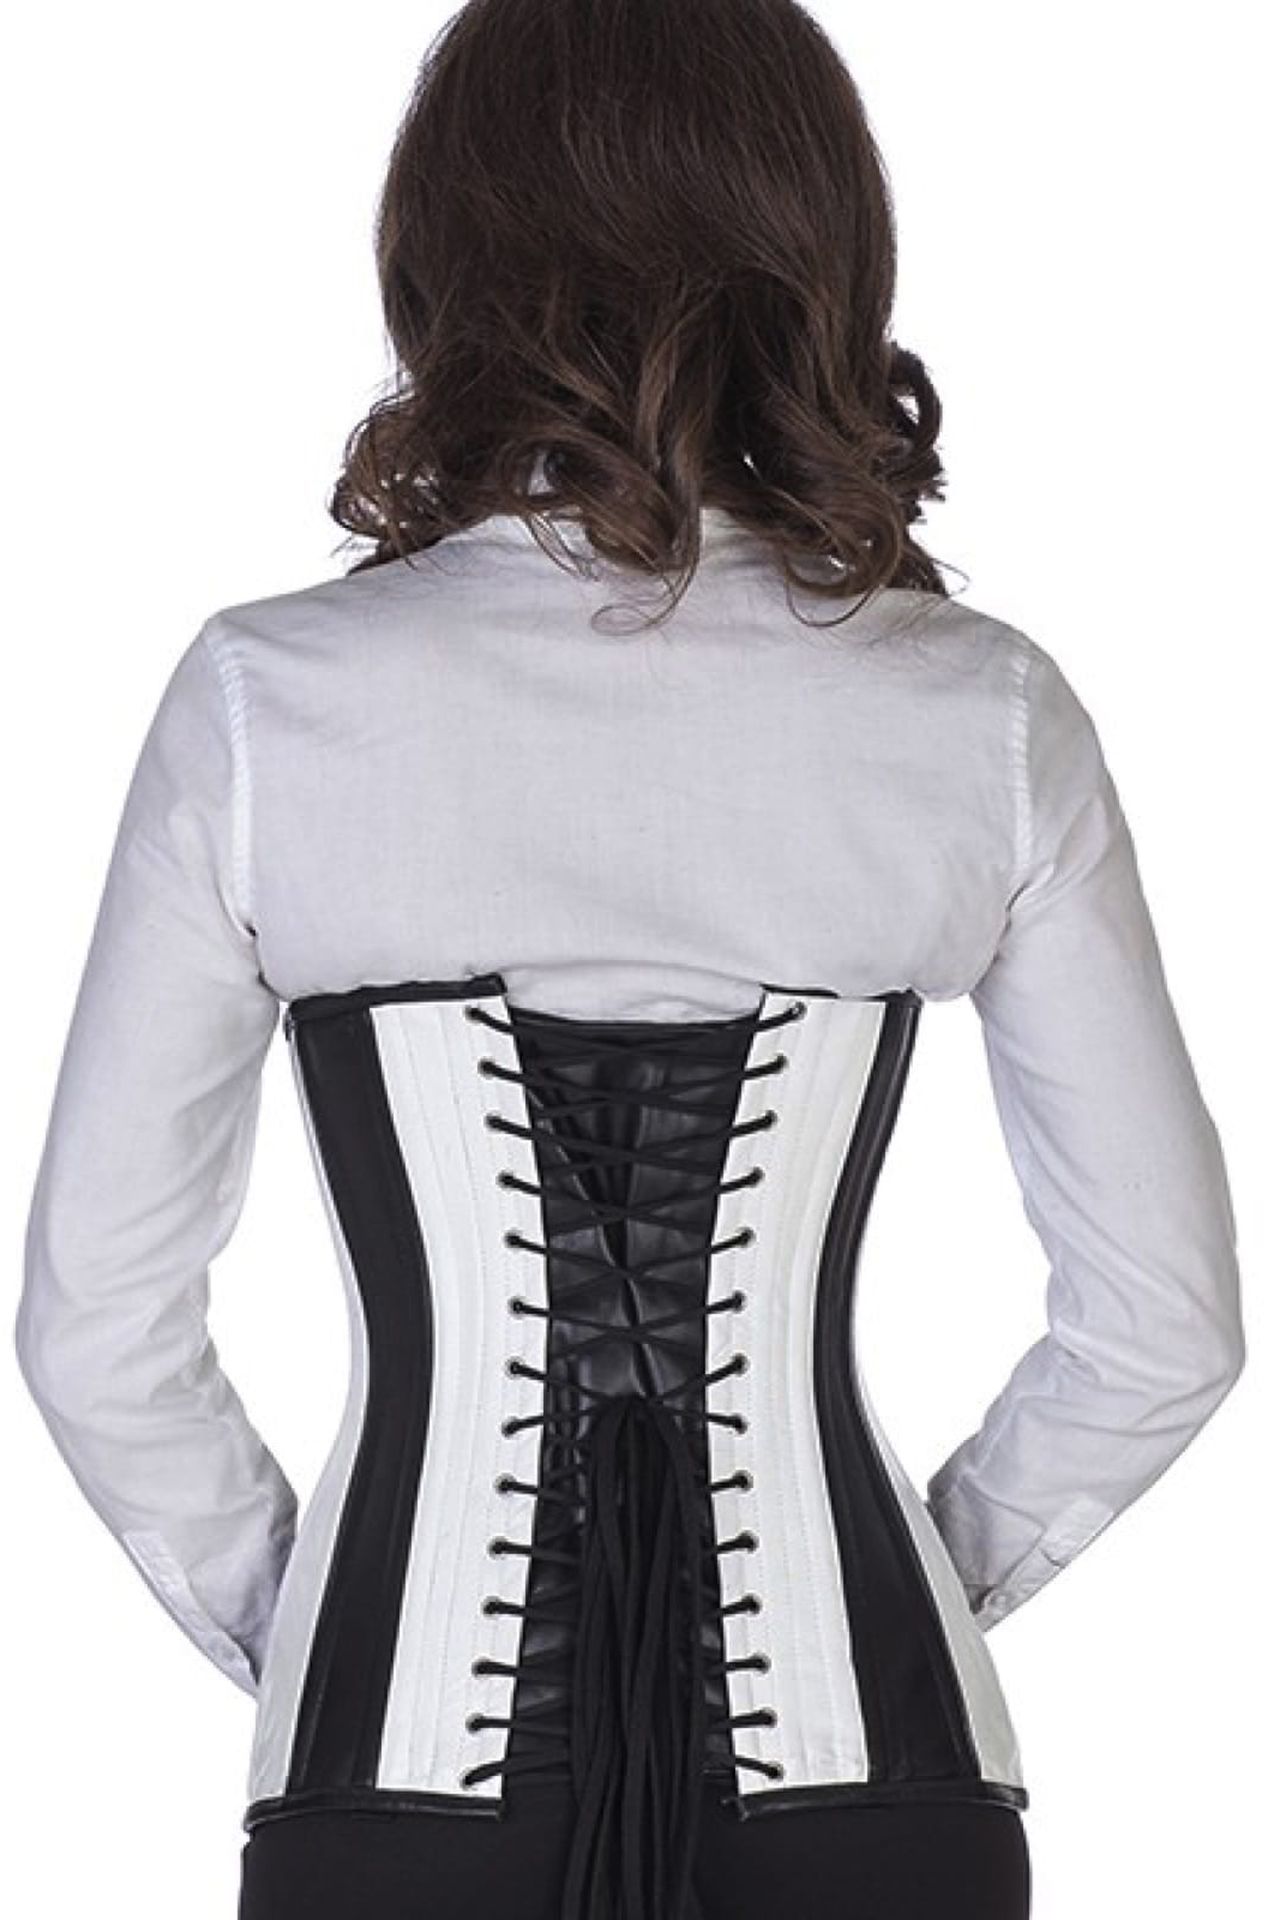 Leren corset zwart wit onderborst rond gevormd Korset ln35